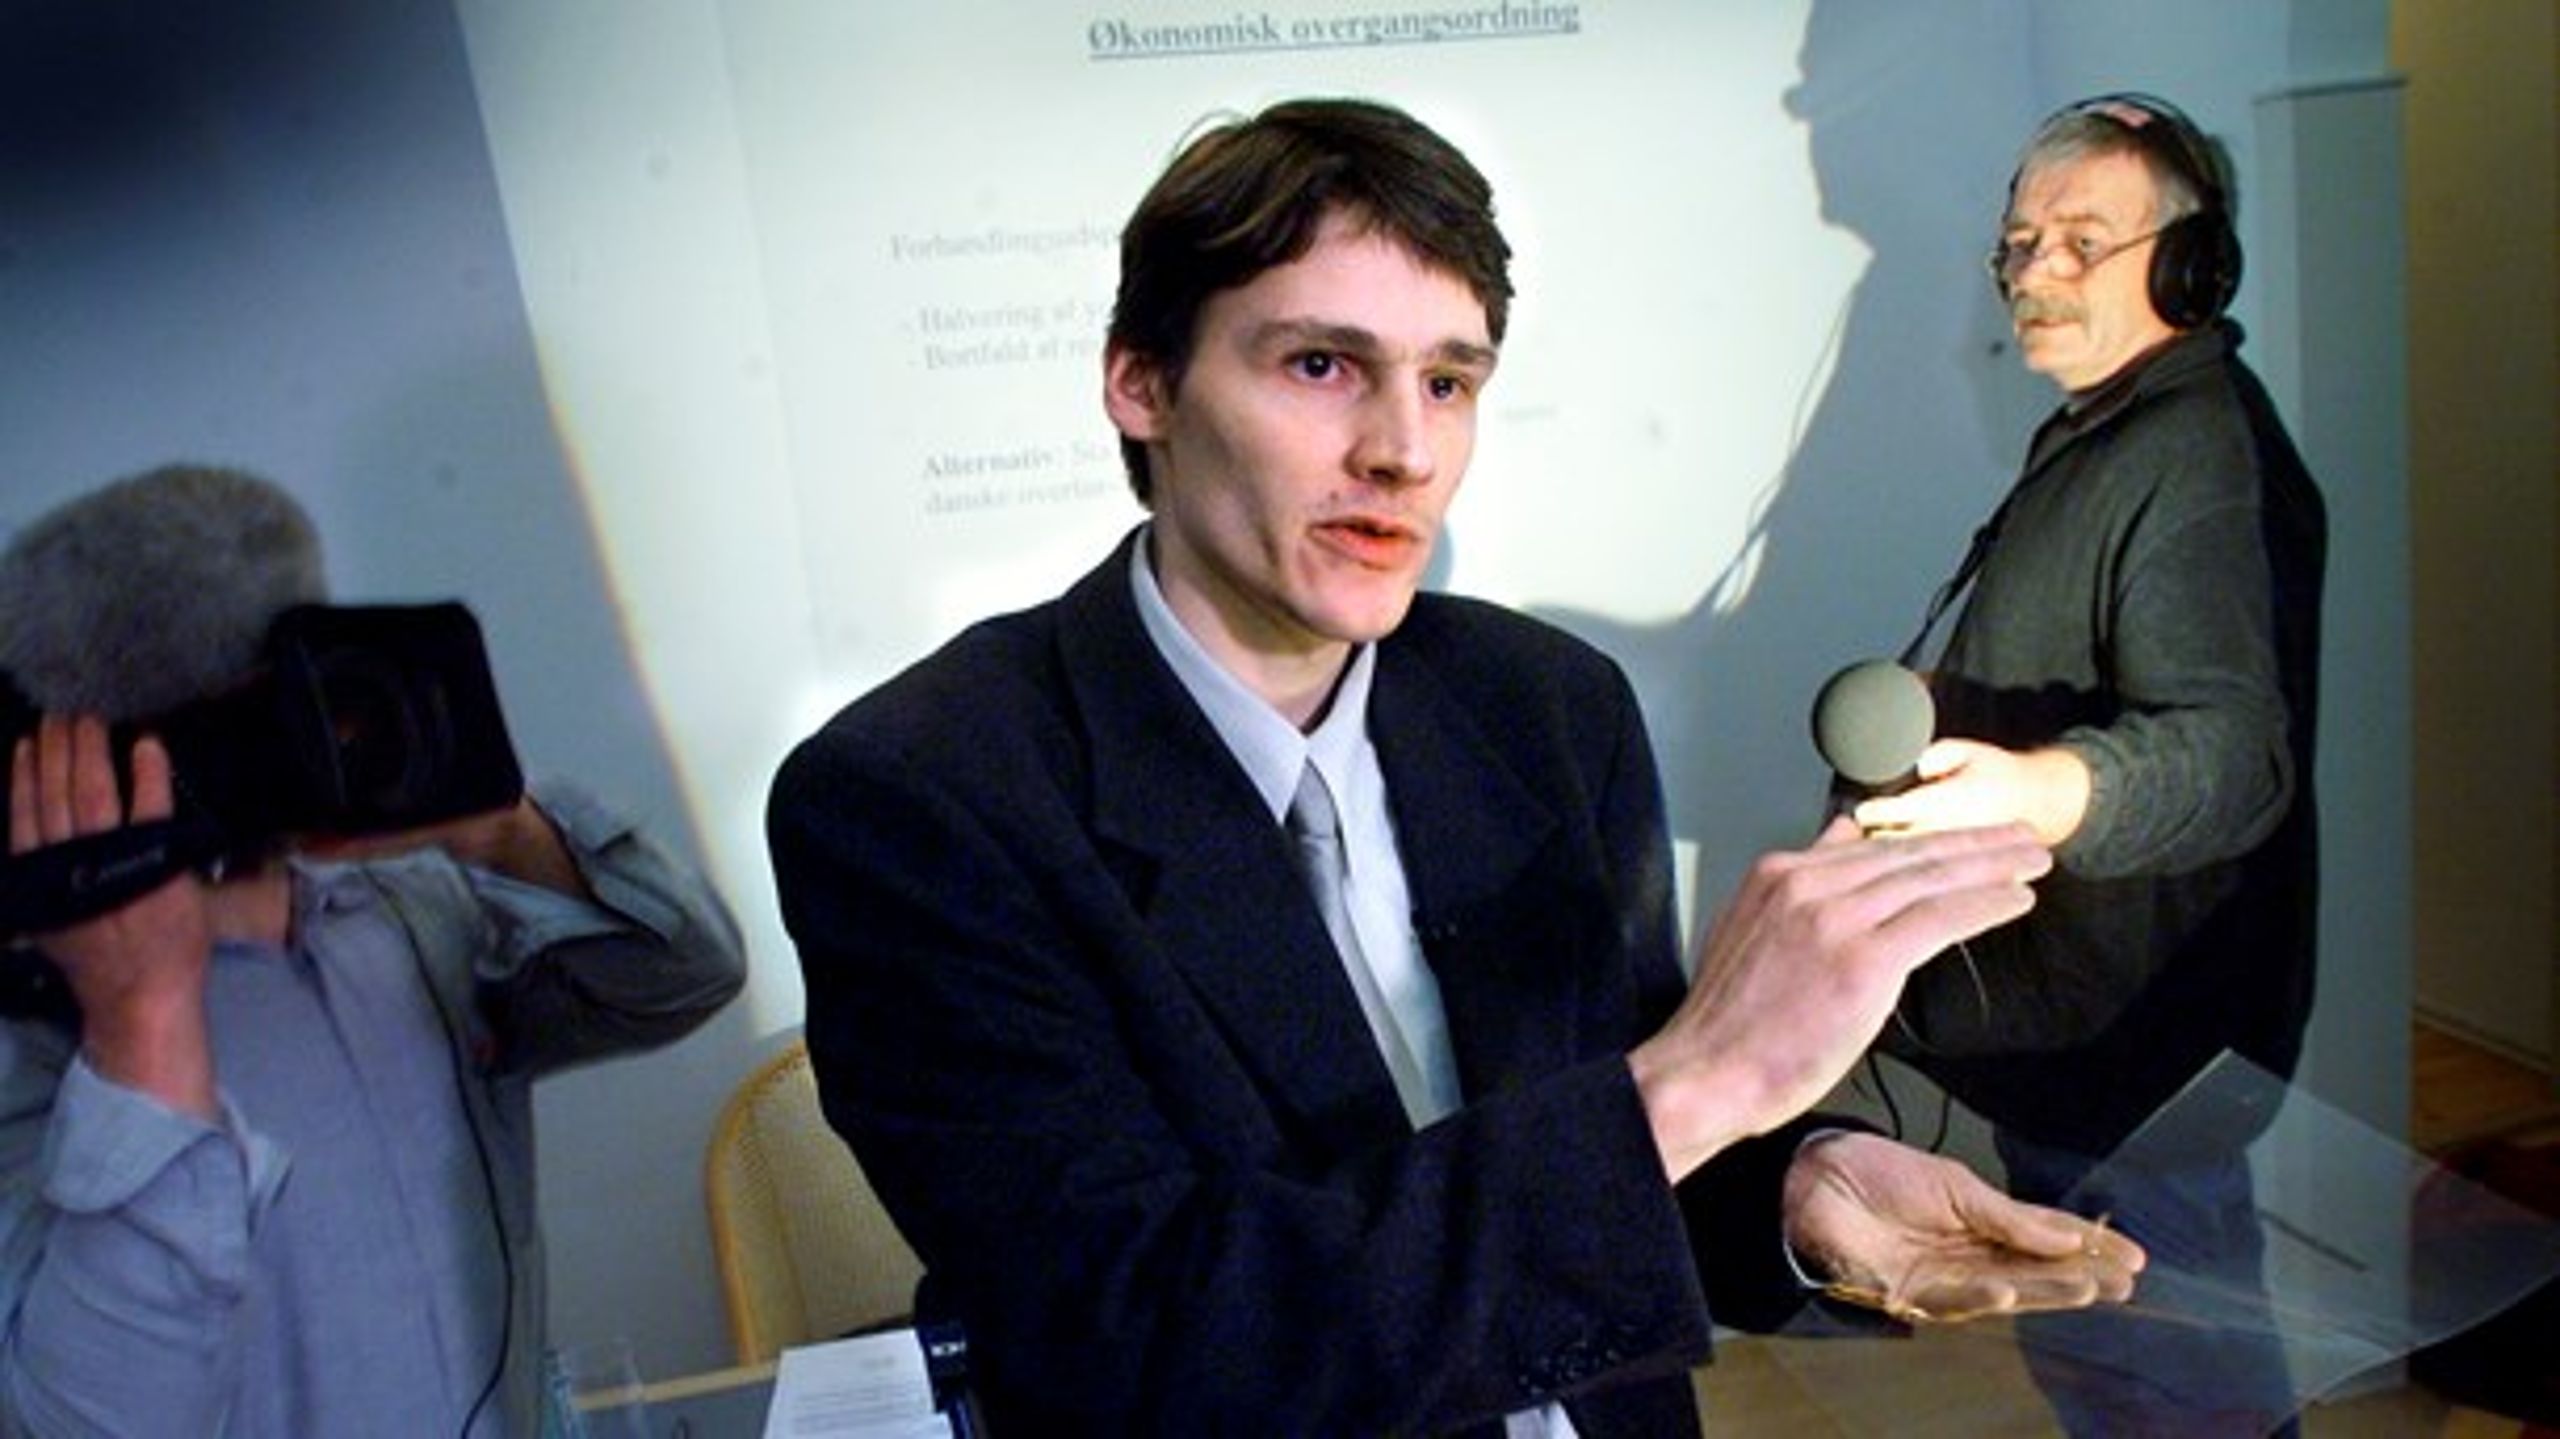 Høgni Hoydal fremlægger Færøernes forhandlingsudspil for pressen i marts 2000.